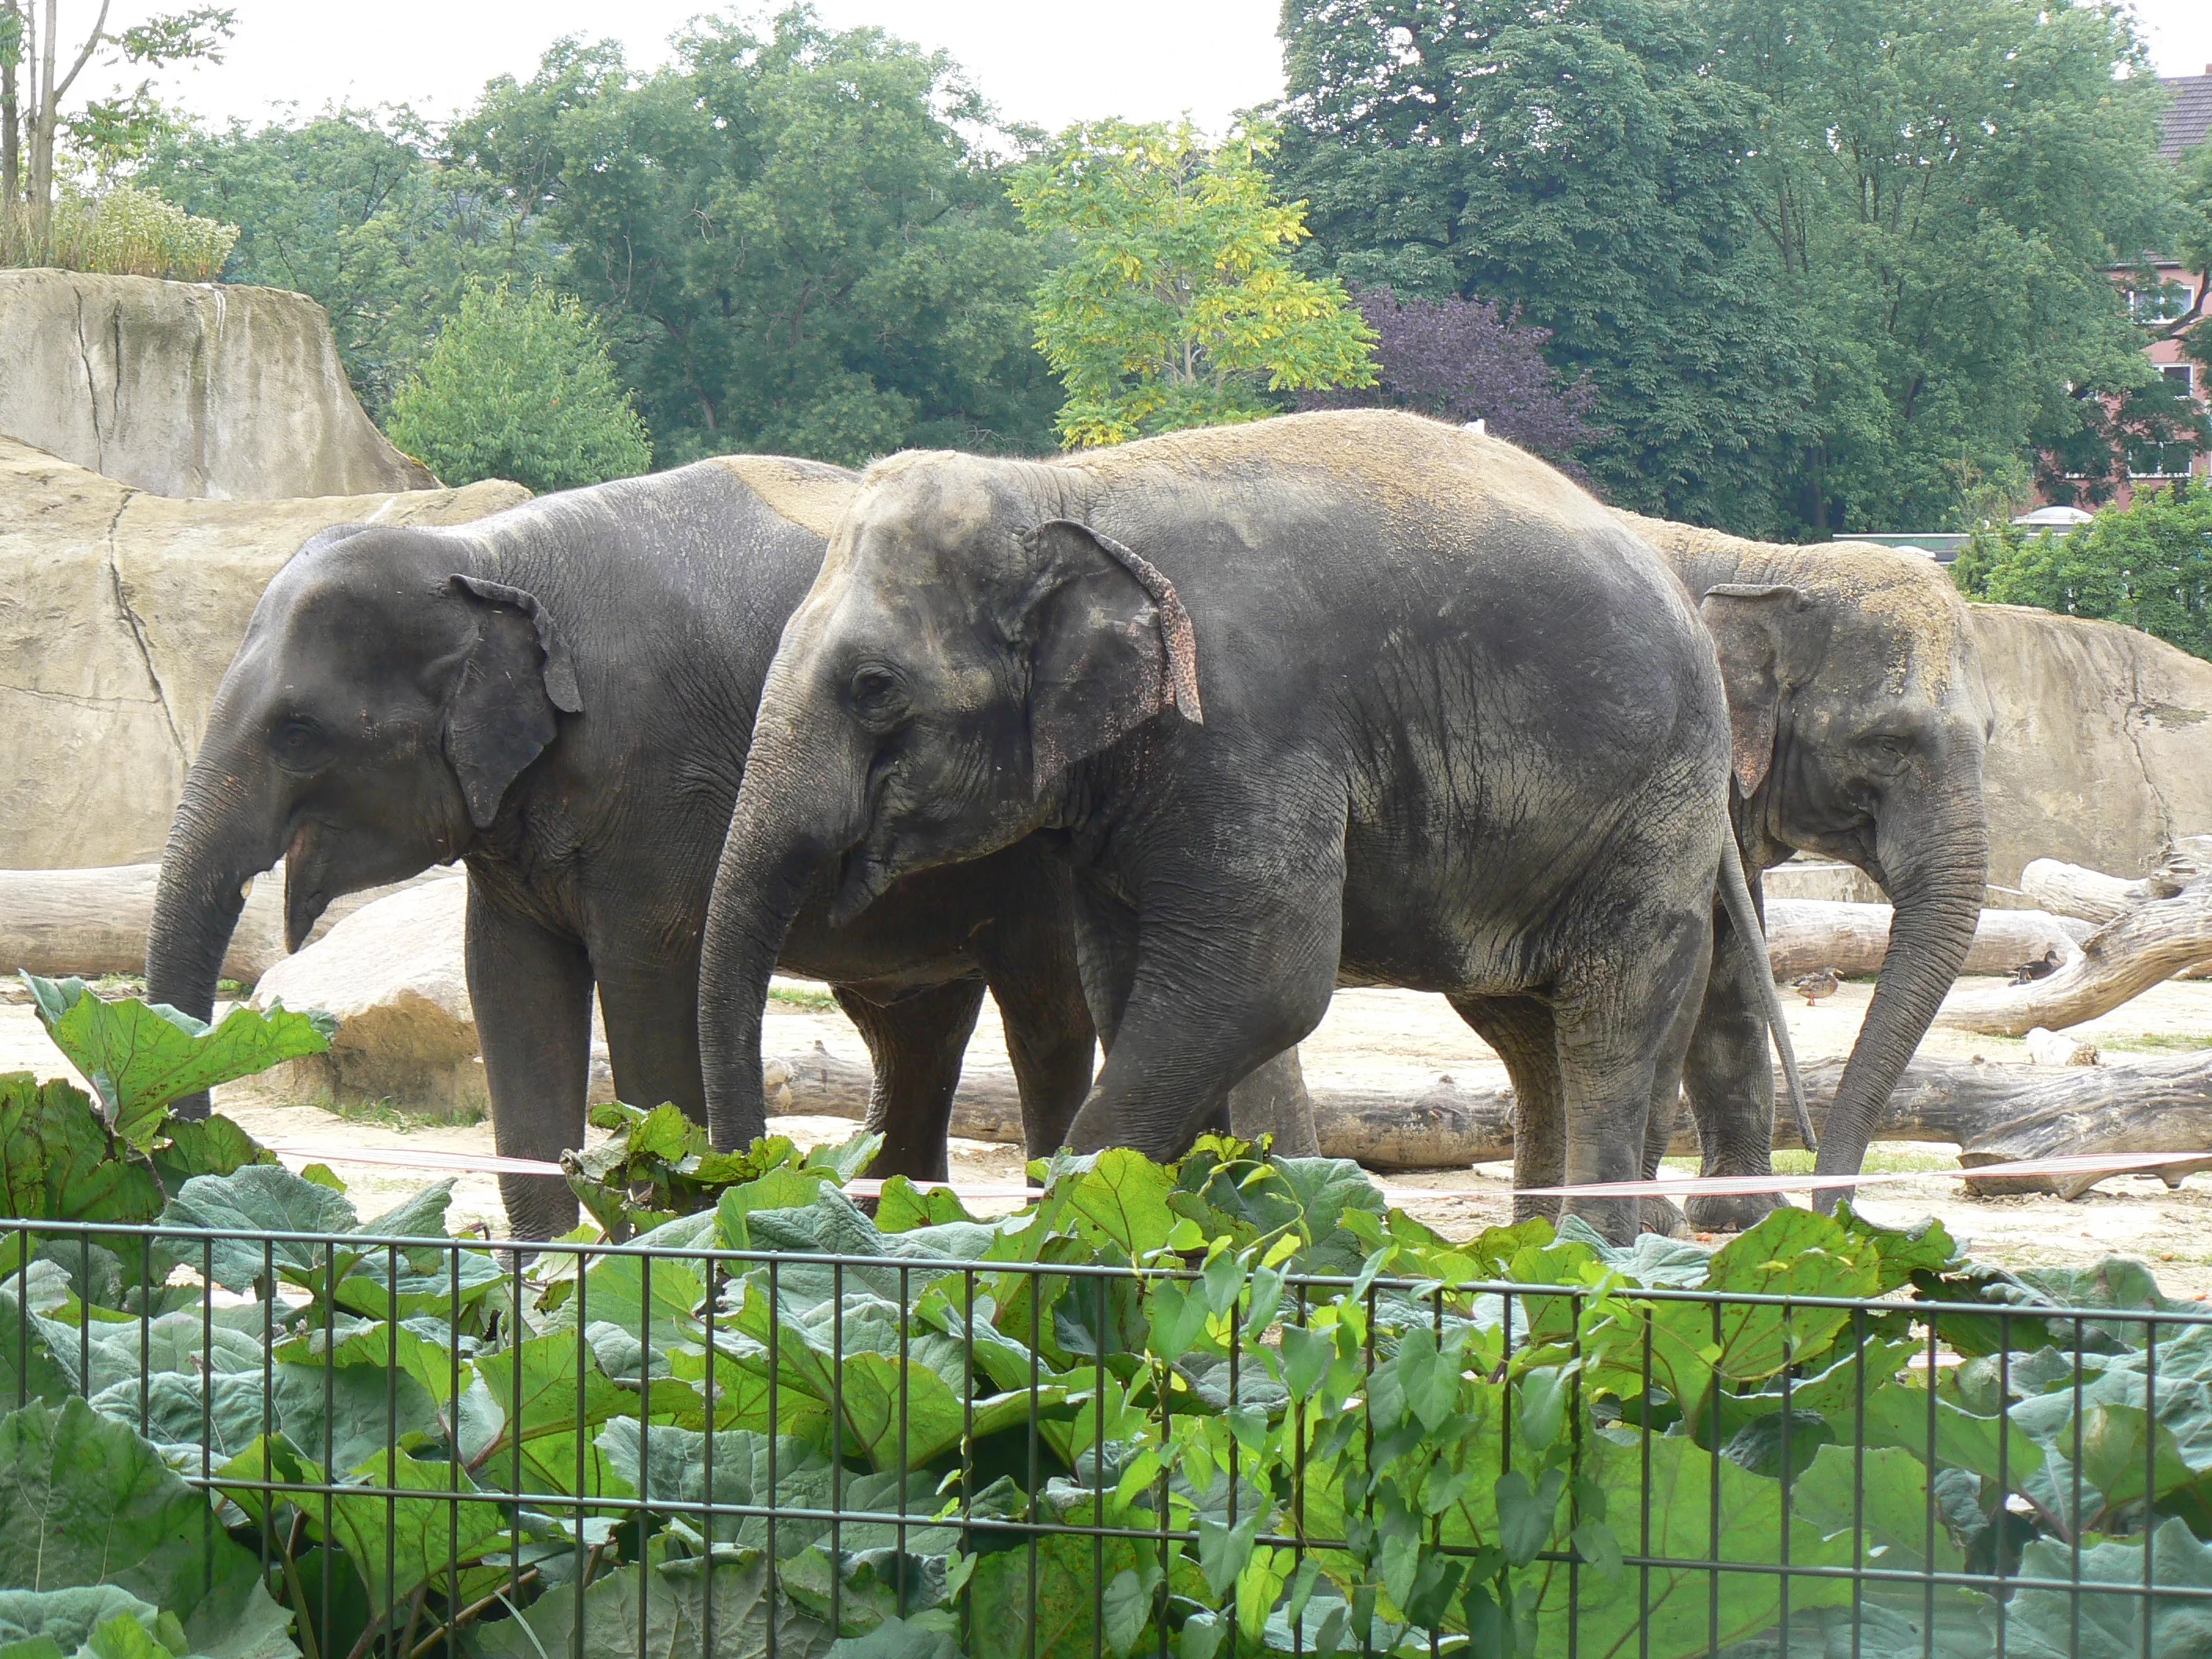 Нажмите для увеличения. Всемирный день защиты слонов в зоопарках.. Фото с сайта https://esliustal.ru/all/parki-razvlecheniy/aziatskie-slony-elephas-maximus-v-zooparke-kelyn